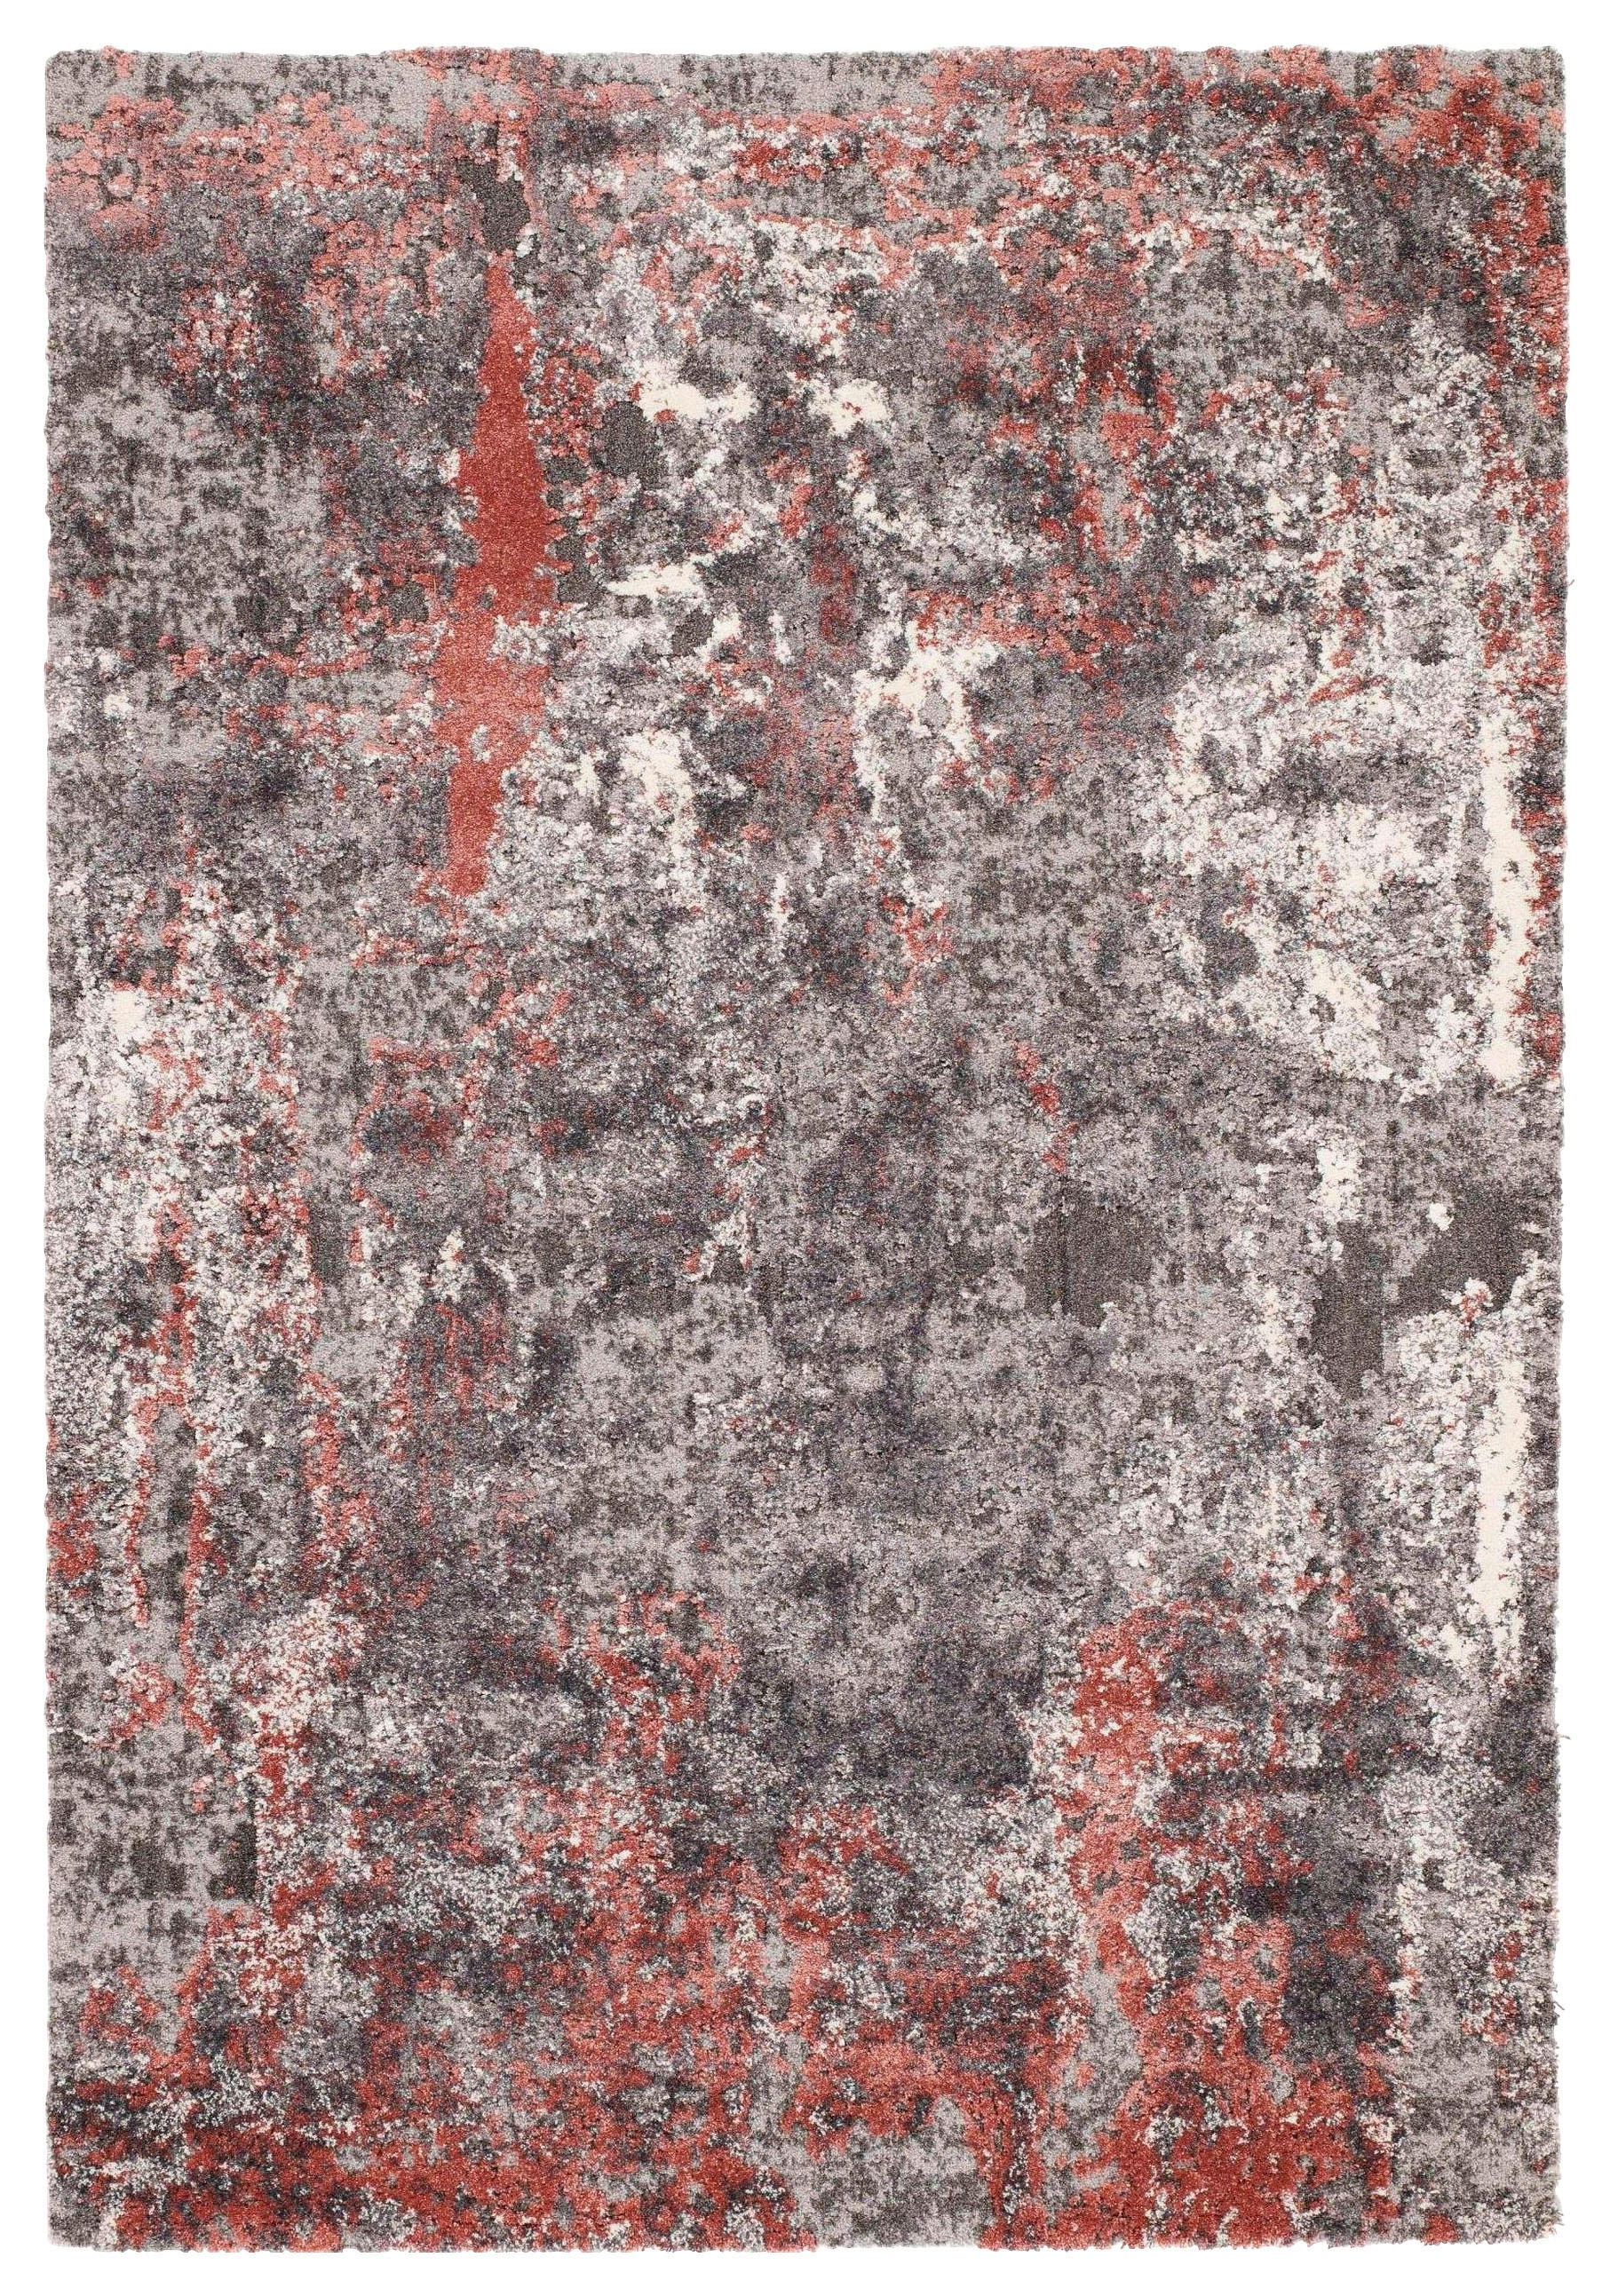 WEBTEPPICH  200/290 cm  Grau, Hellrot   - Hellrot/Grau, Design, Textil (200/290cm) - Novel